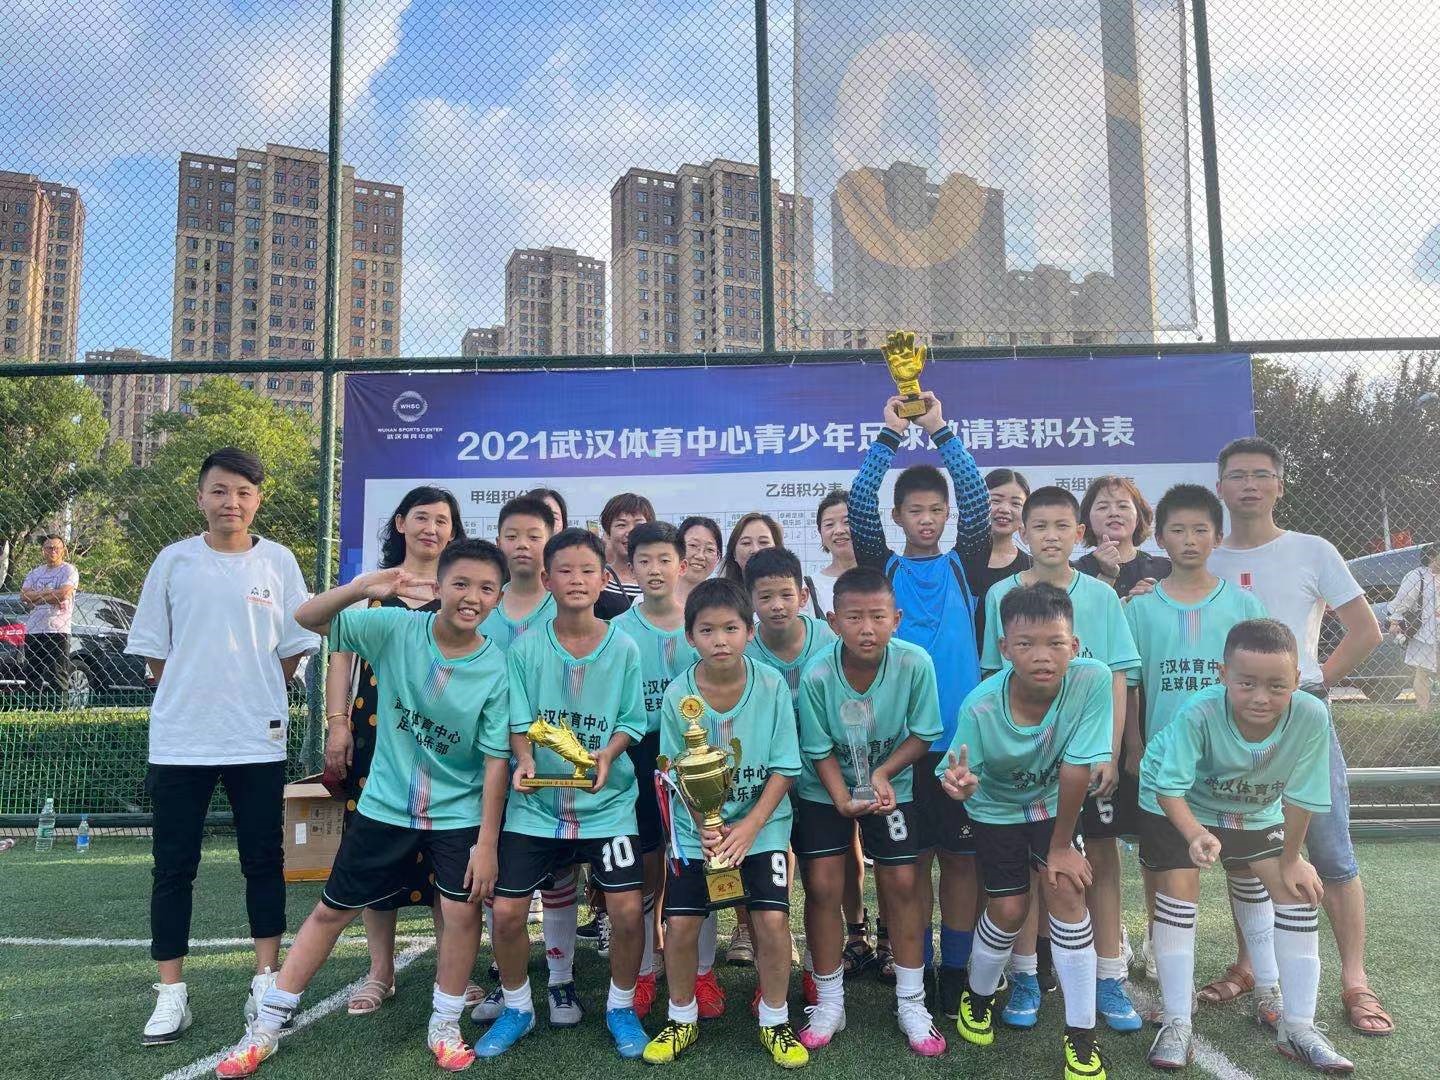 武汉体育中心,青少年足球邀请赛圆满落幕